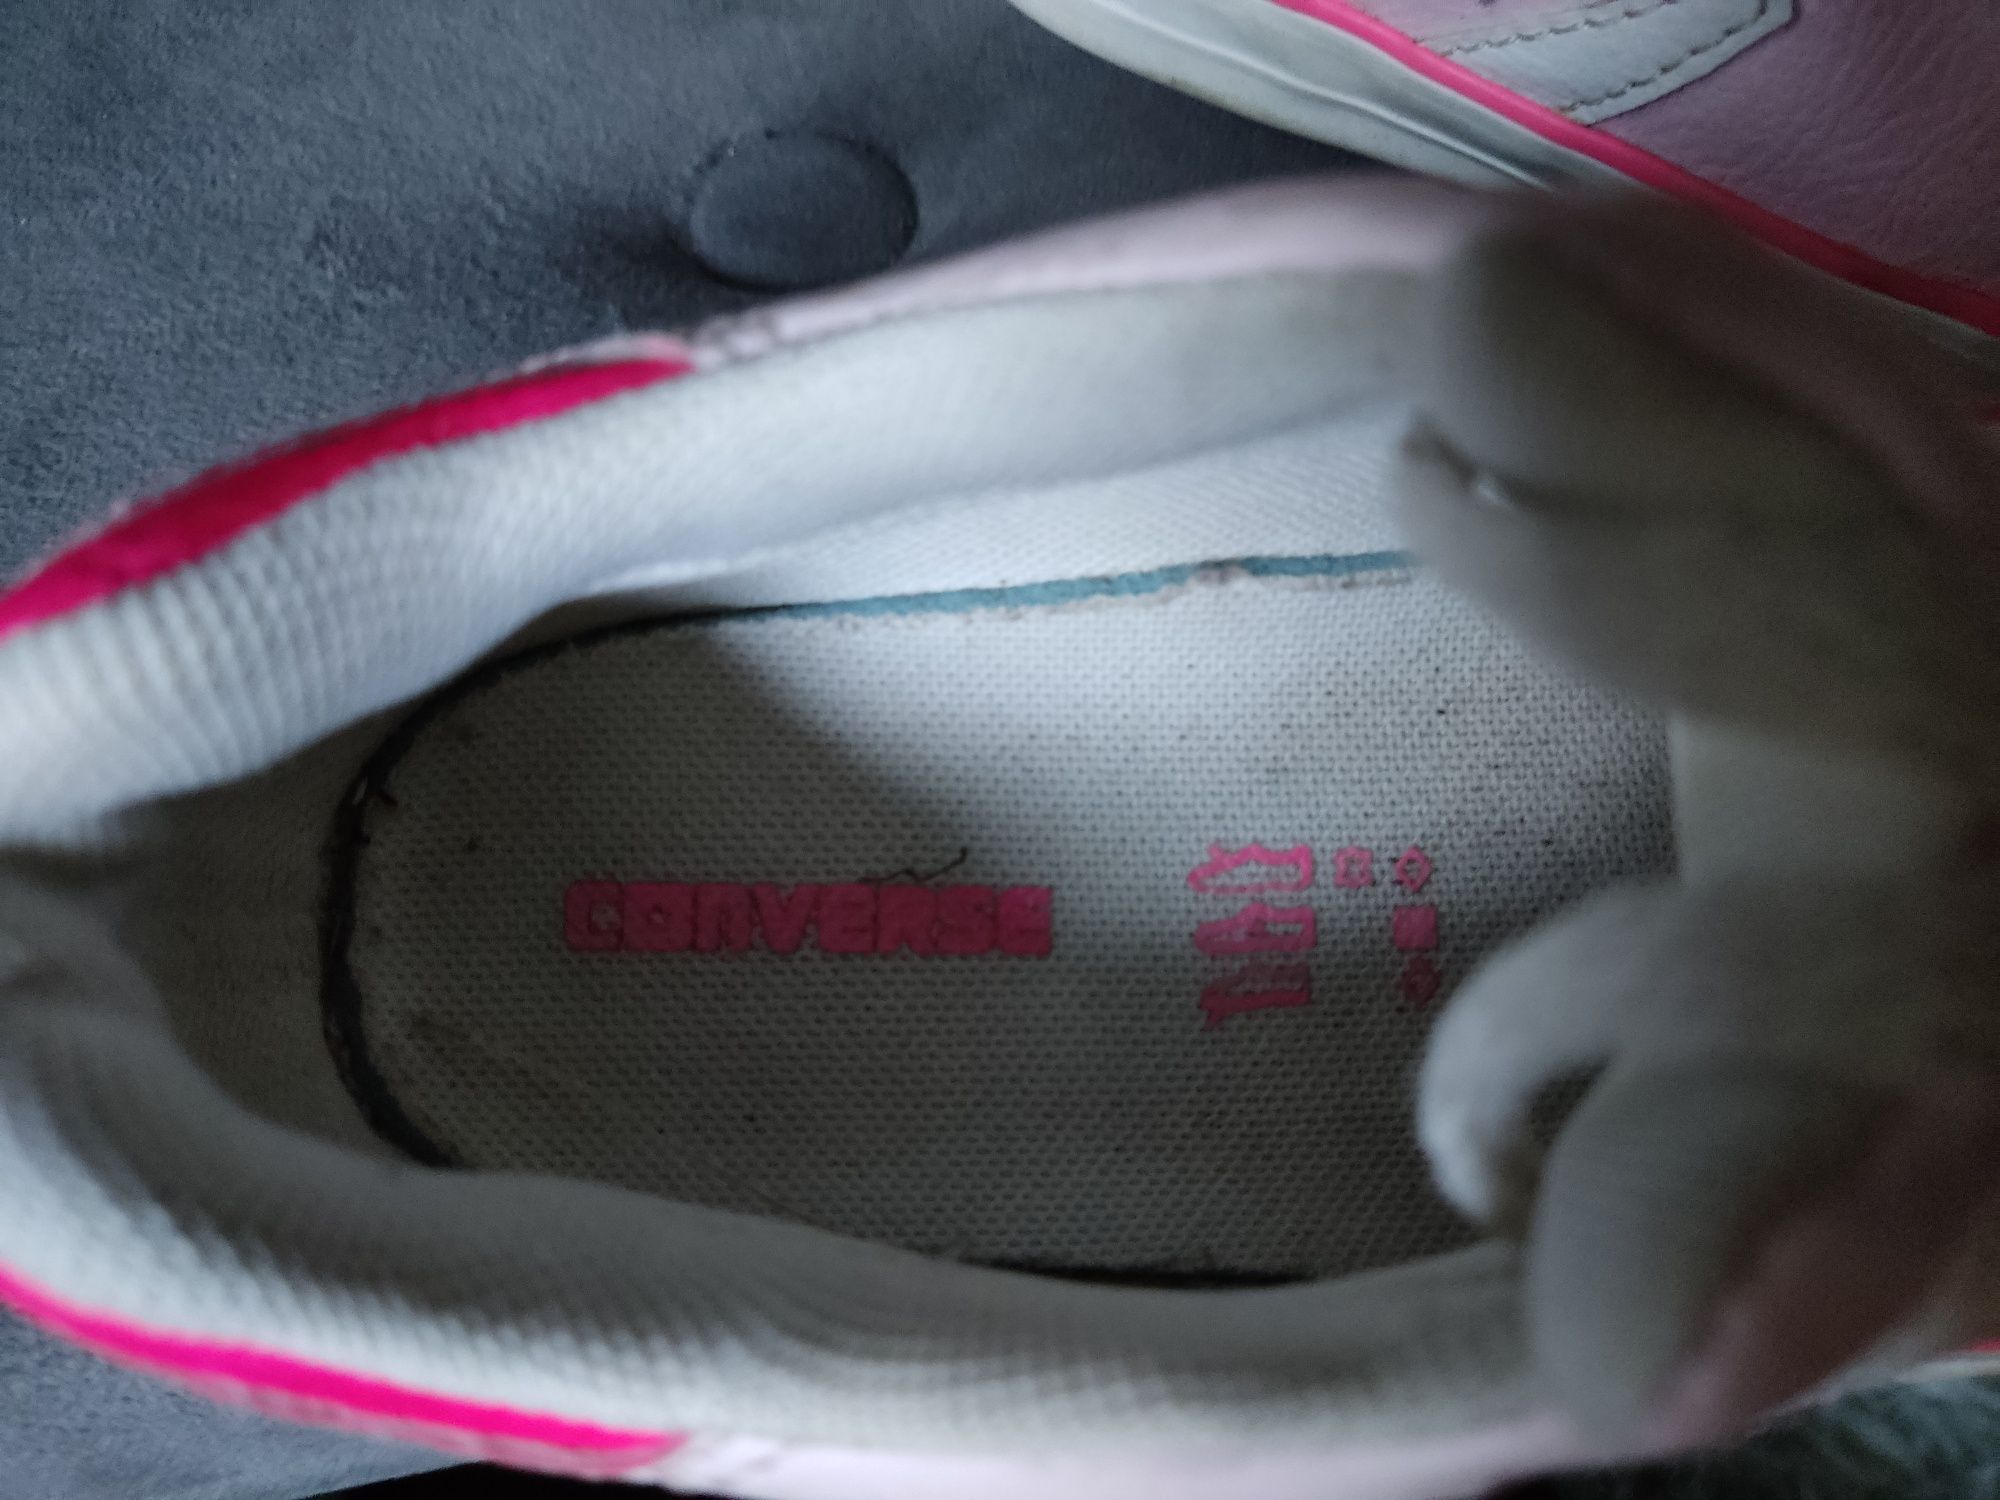 Buty dziewczęce Converse All Star Trampki Adidasy różowe sportowe 25